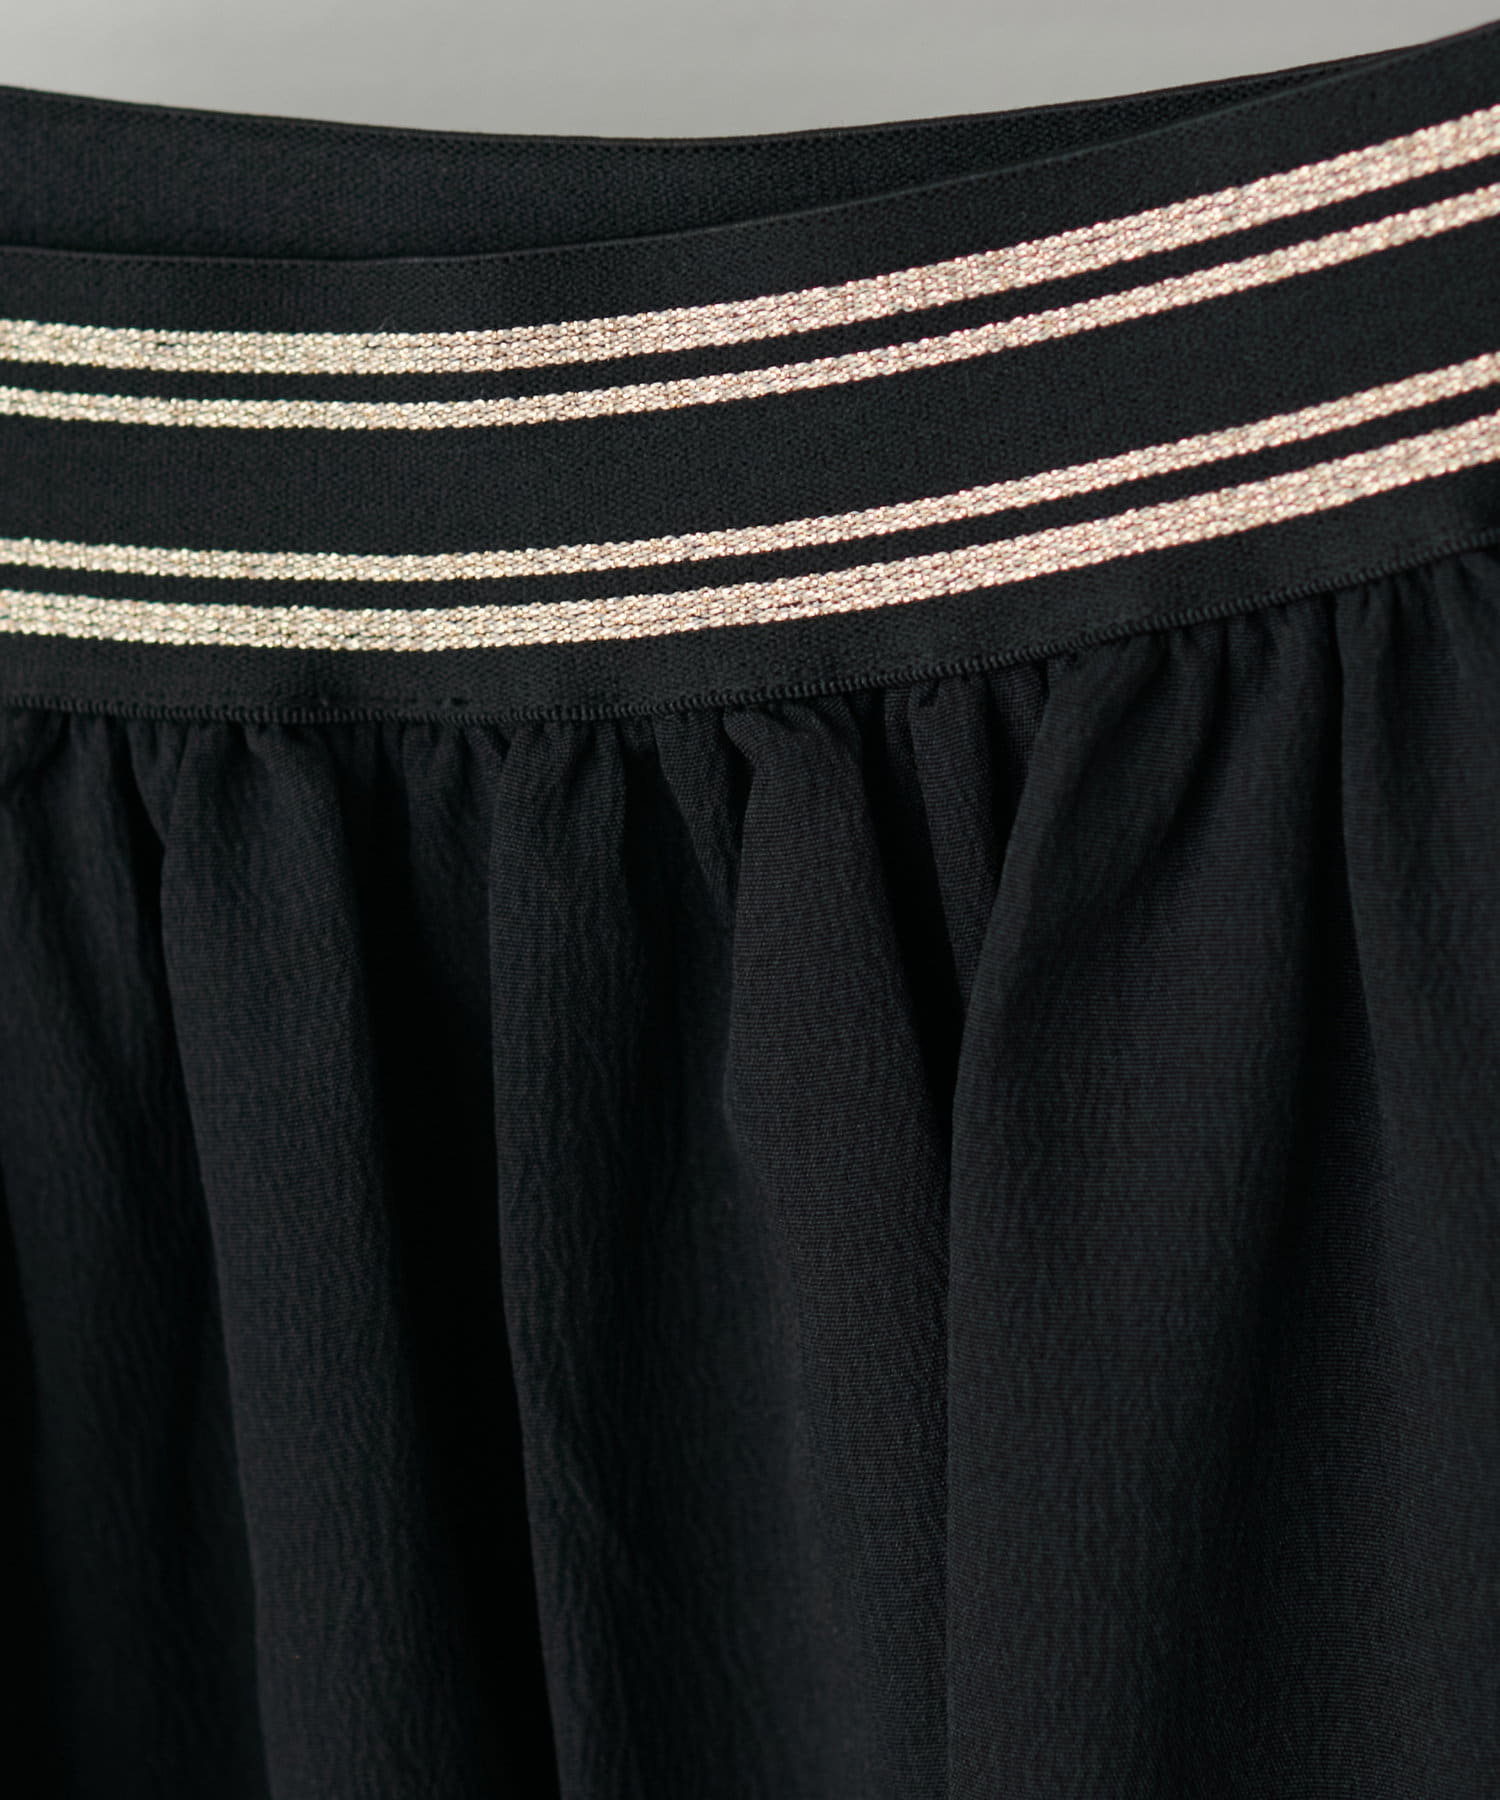 natural couture(ナチュラルクチュール) ラメゴムギャザーボリュームスカート